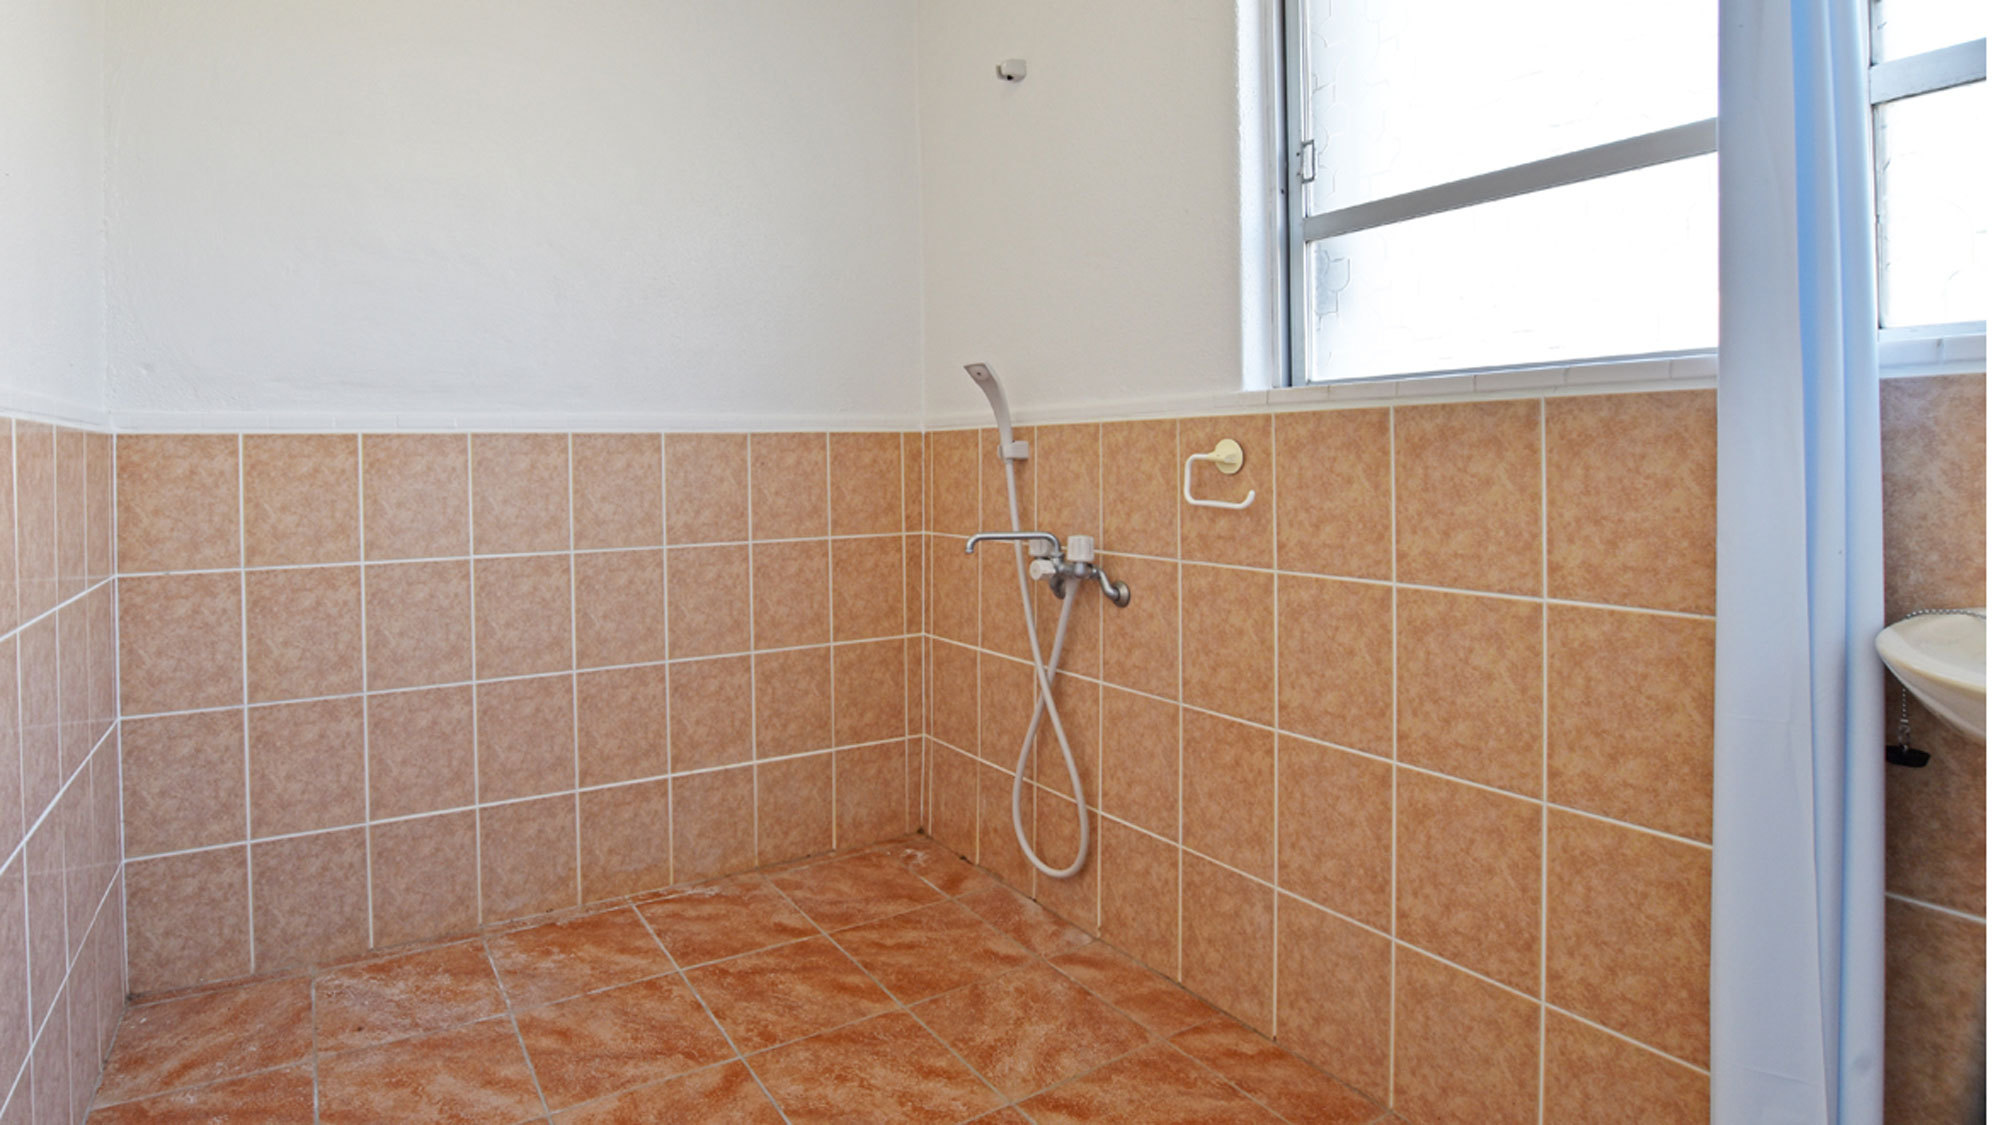 【シャワールーム】バスタブがない分、広々スペースで使いやすいシャワールーム